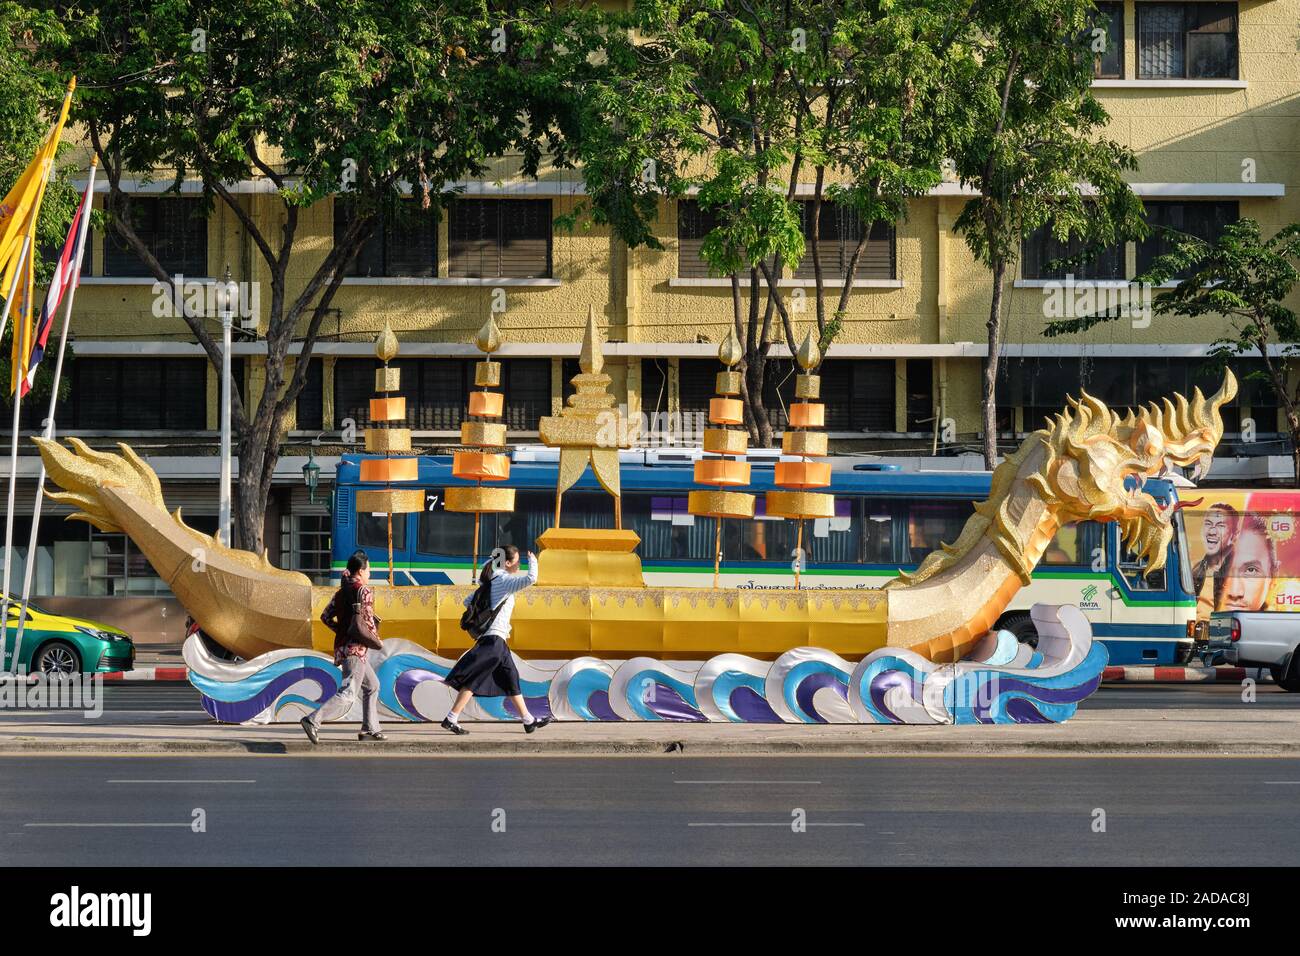 Une réplique de barge royale, Suwannahongse Subhannahong (Suwannahong) utilisé par le roi thaïlandais dans les cérémonies, à Ratchadamnoen Klang, Bangkok, Thaïlande Banque D'Images